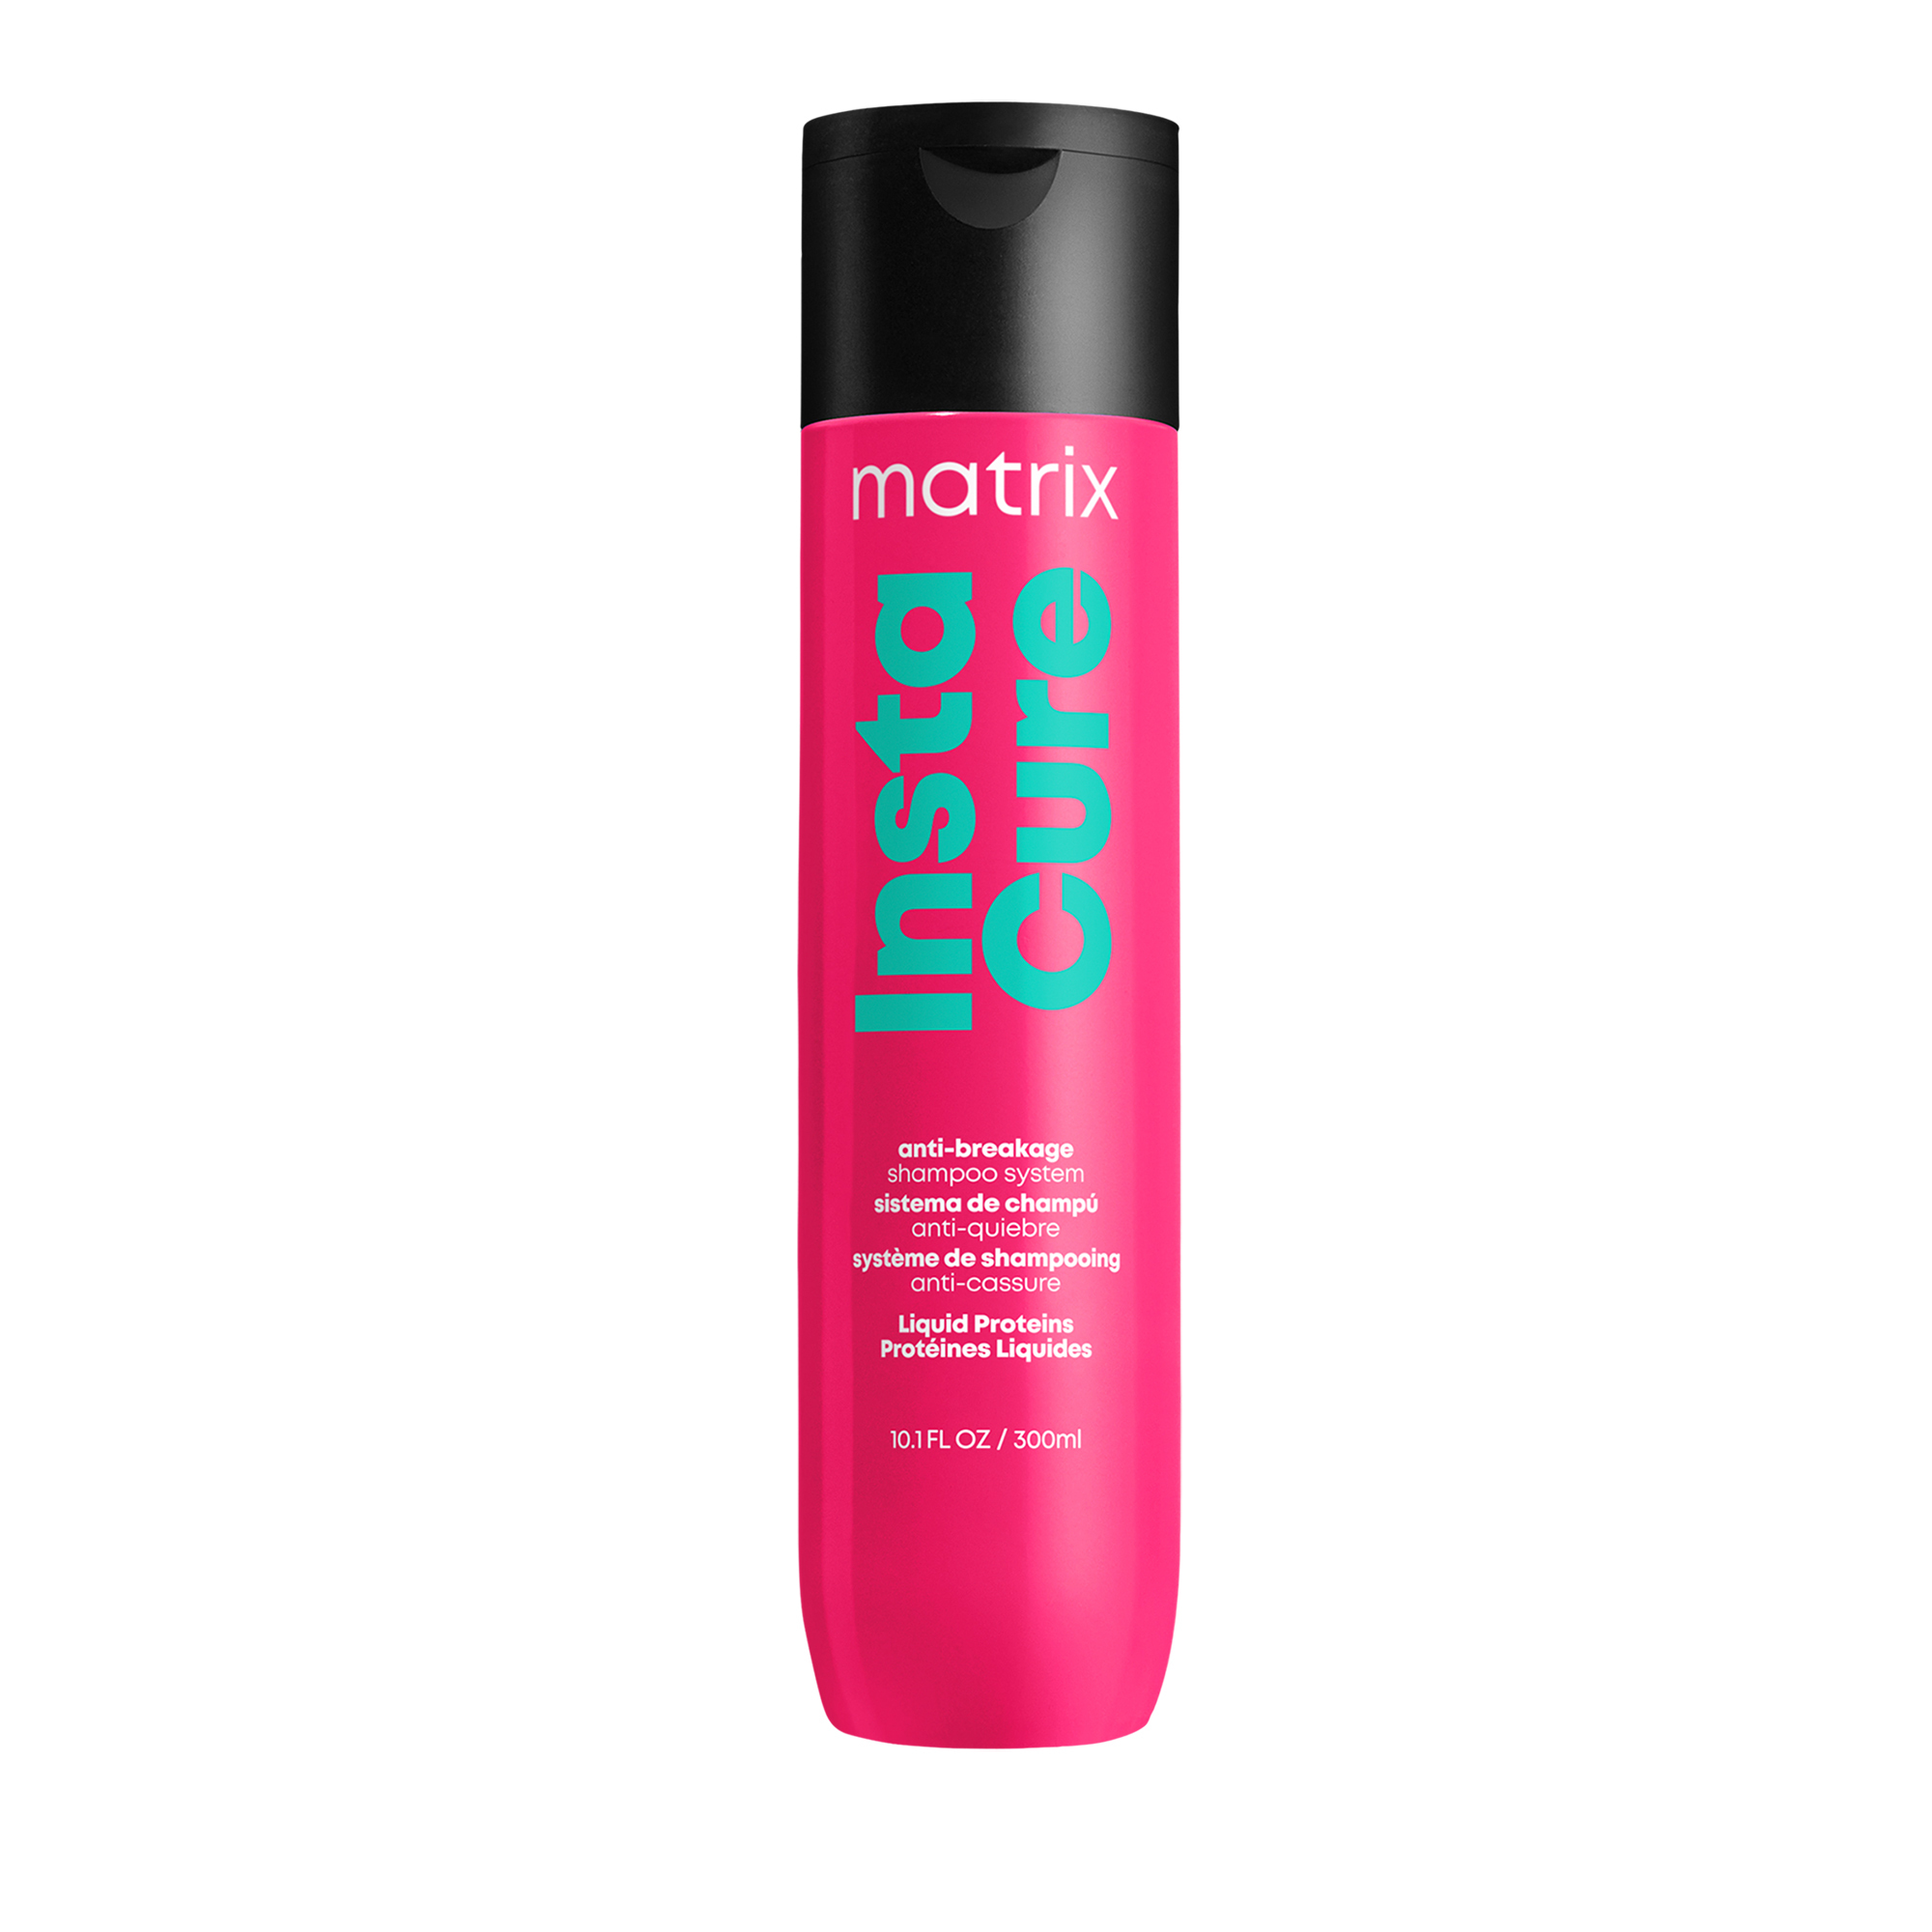 Matrix Šampon proti lámavosti vlasů Instacure (Shampoo) 300 ml 300 ml